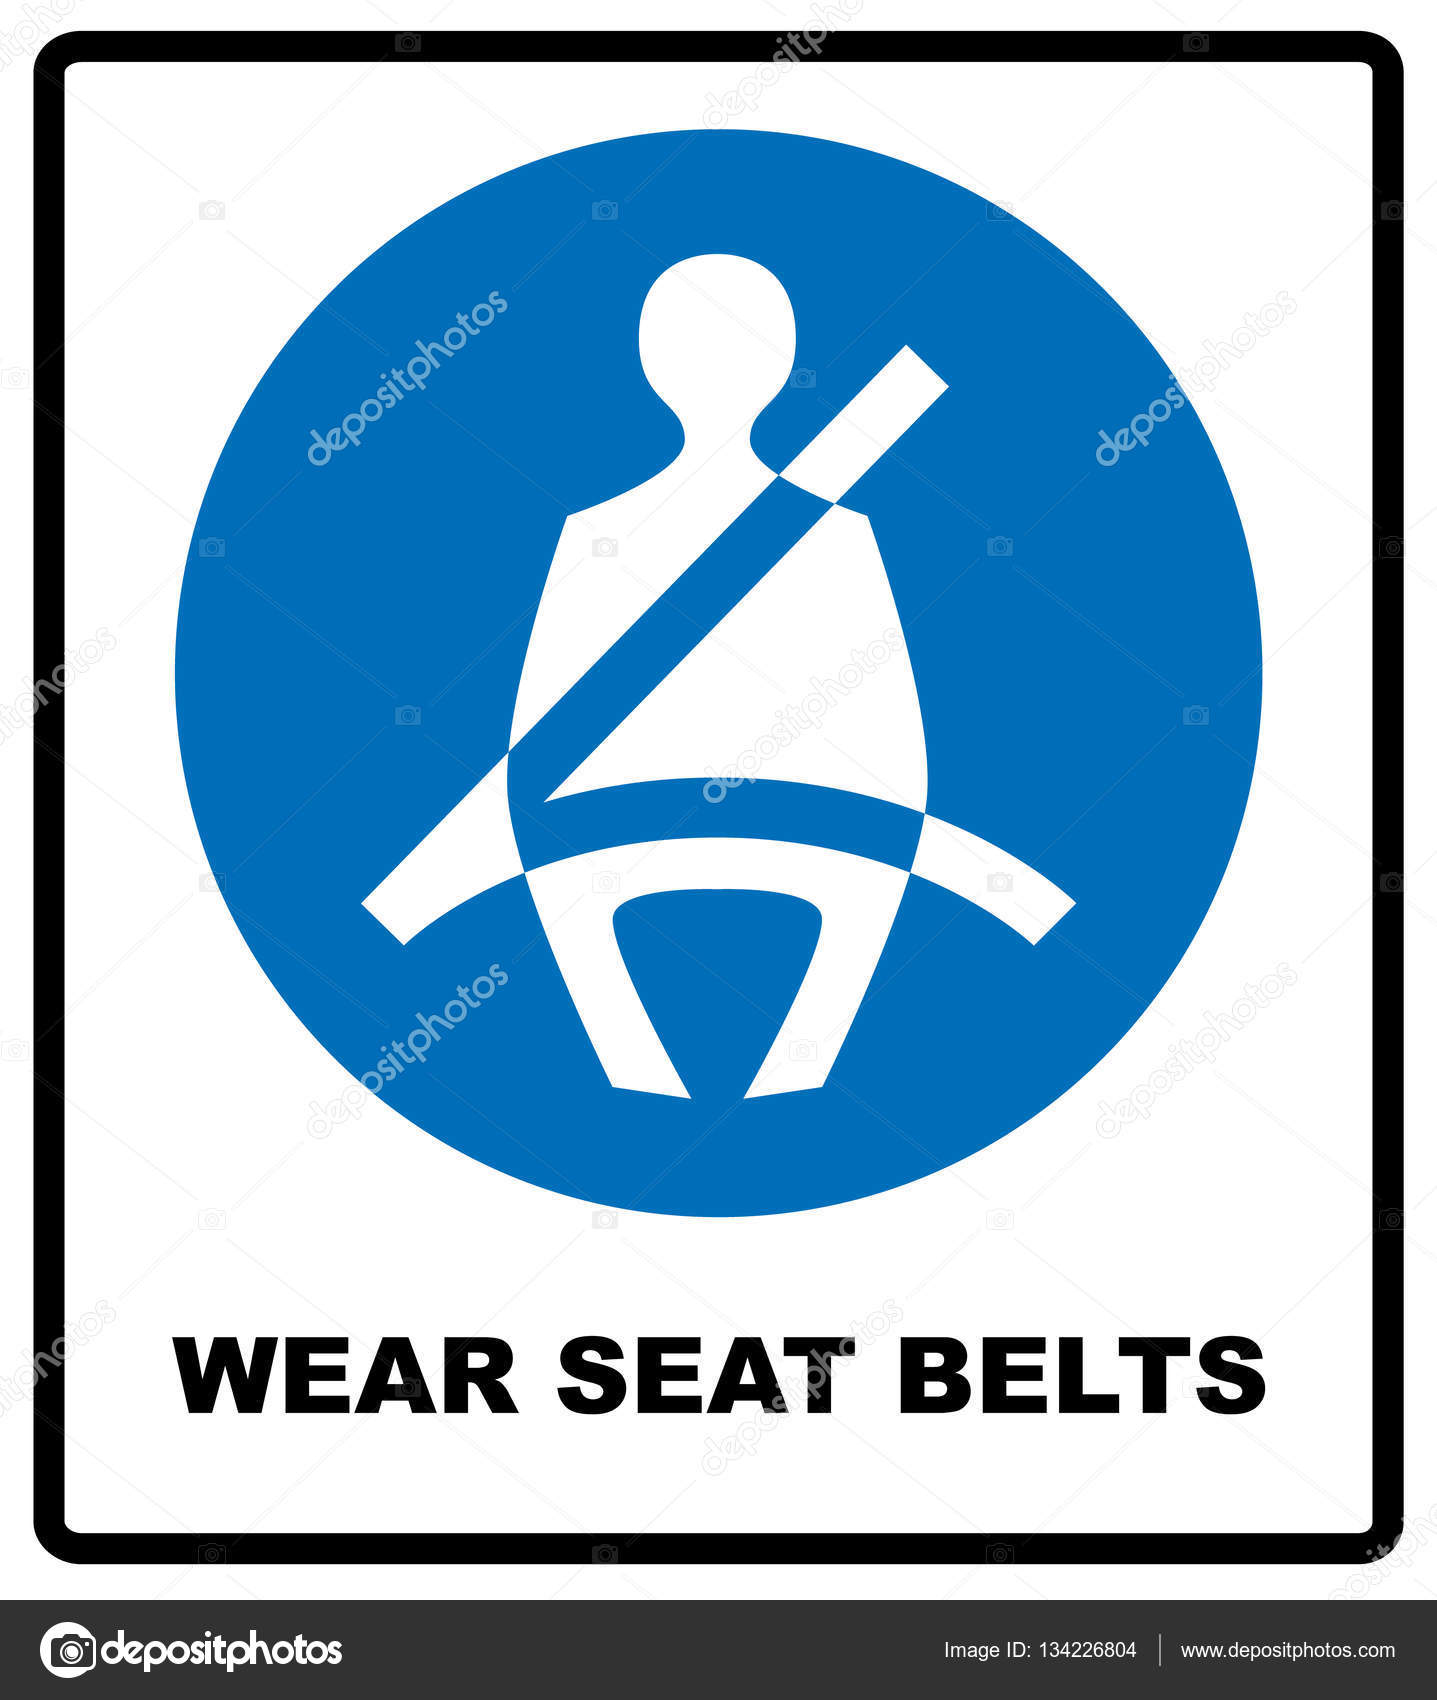 Wear the seatbelt